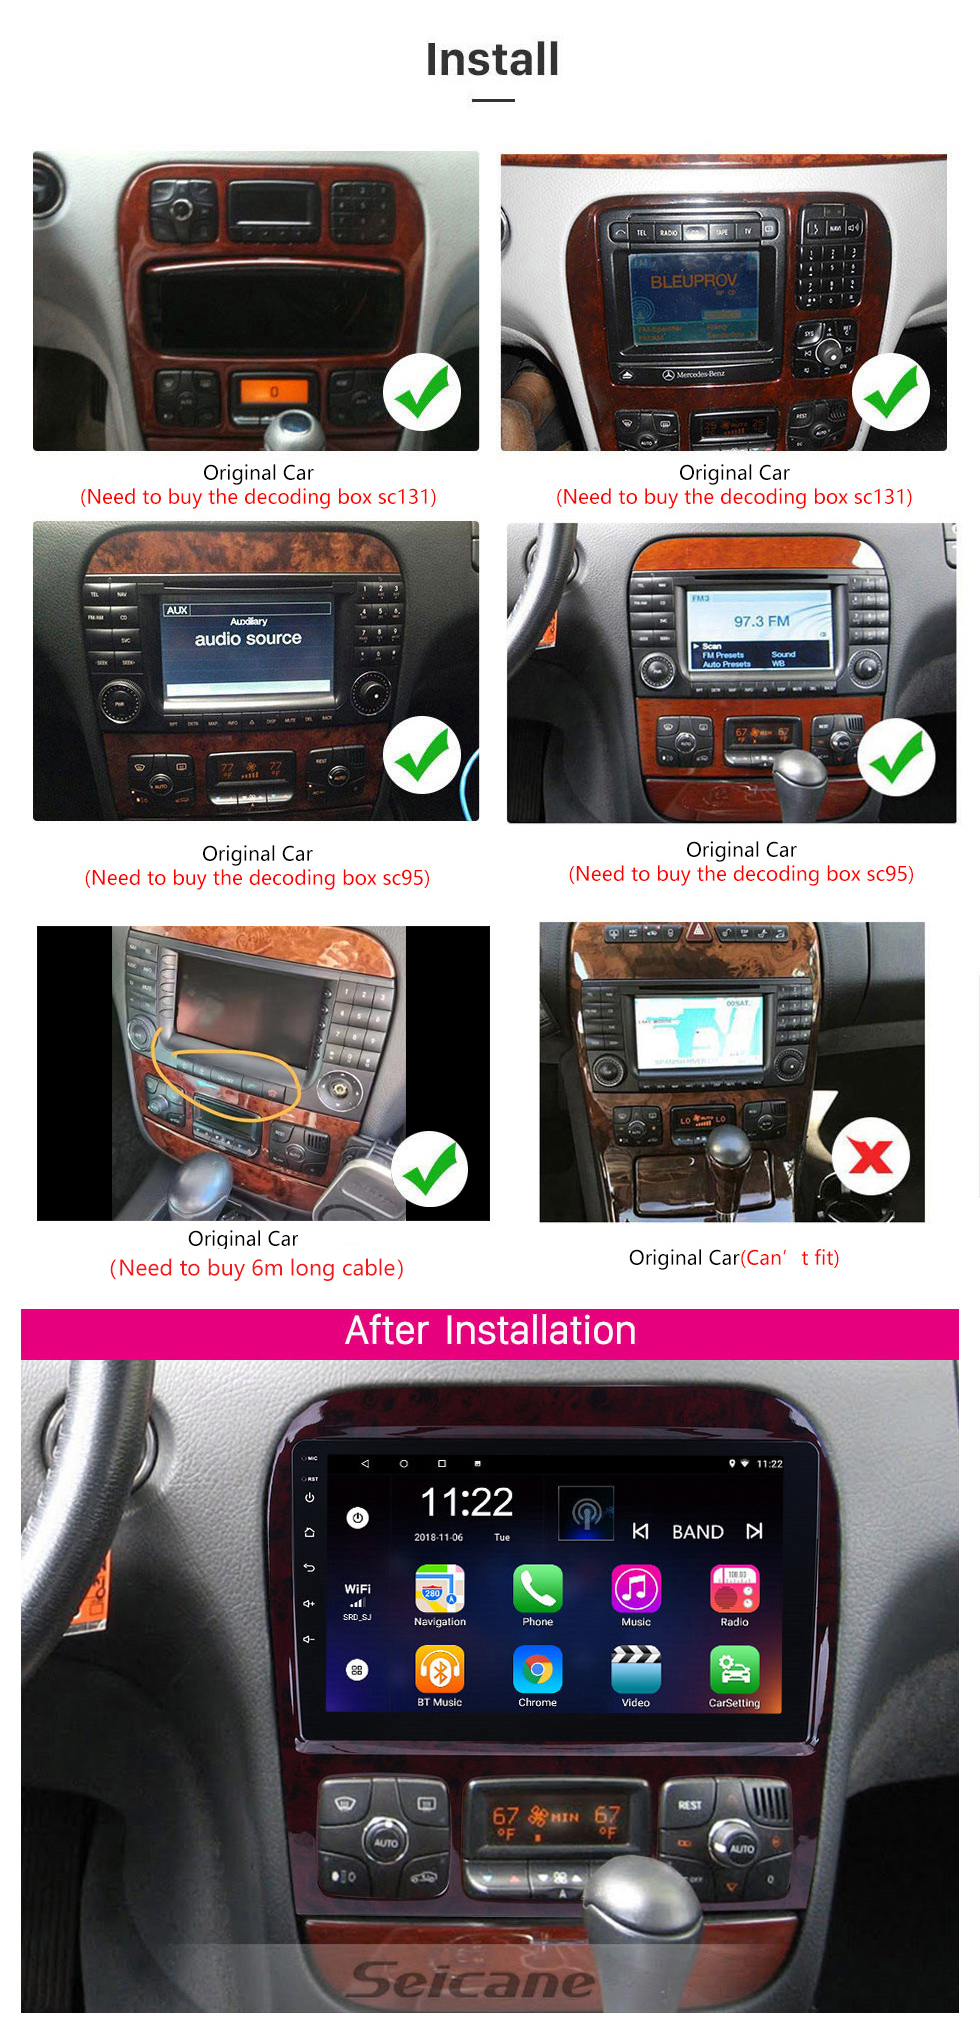 Seicane Écran tactile HD 9 pouces pour 1998-2005 Mercedes Benz Classe S W220/S280/S320/S320 CDI/S400 CDI/S350/S430/S500/S600/S55 AMG/S63 AMG/S65 AMG Radio Autoradio Bluetooth Autoradio sSystem Support Image dans Image